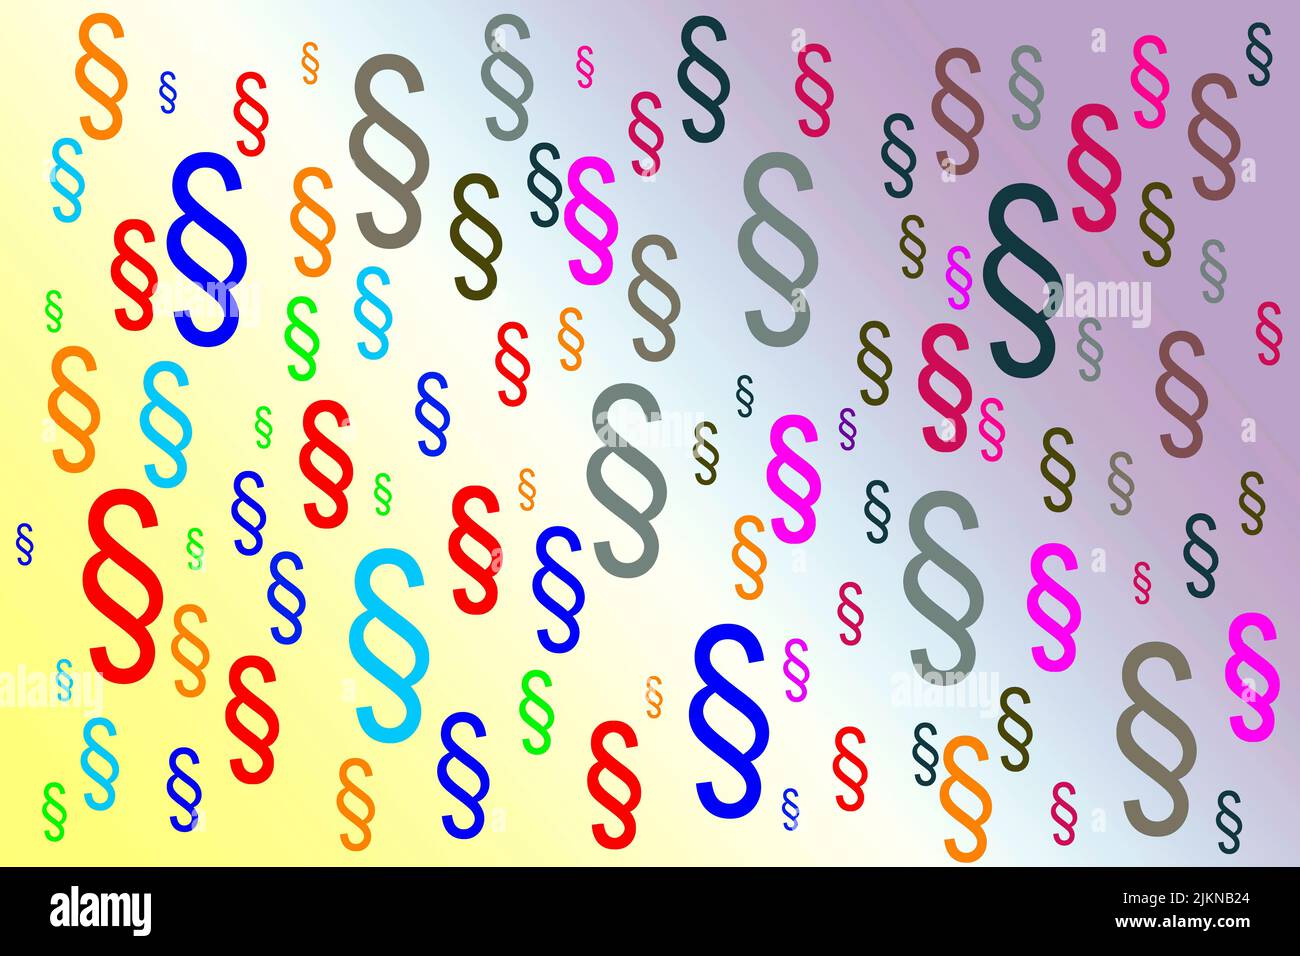 Viele farbige Absatzsymbole auf buntem Hintergrund Stockfoto